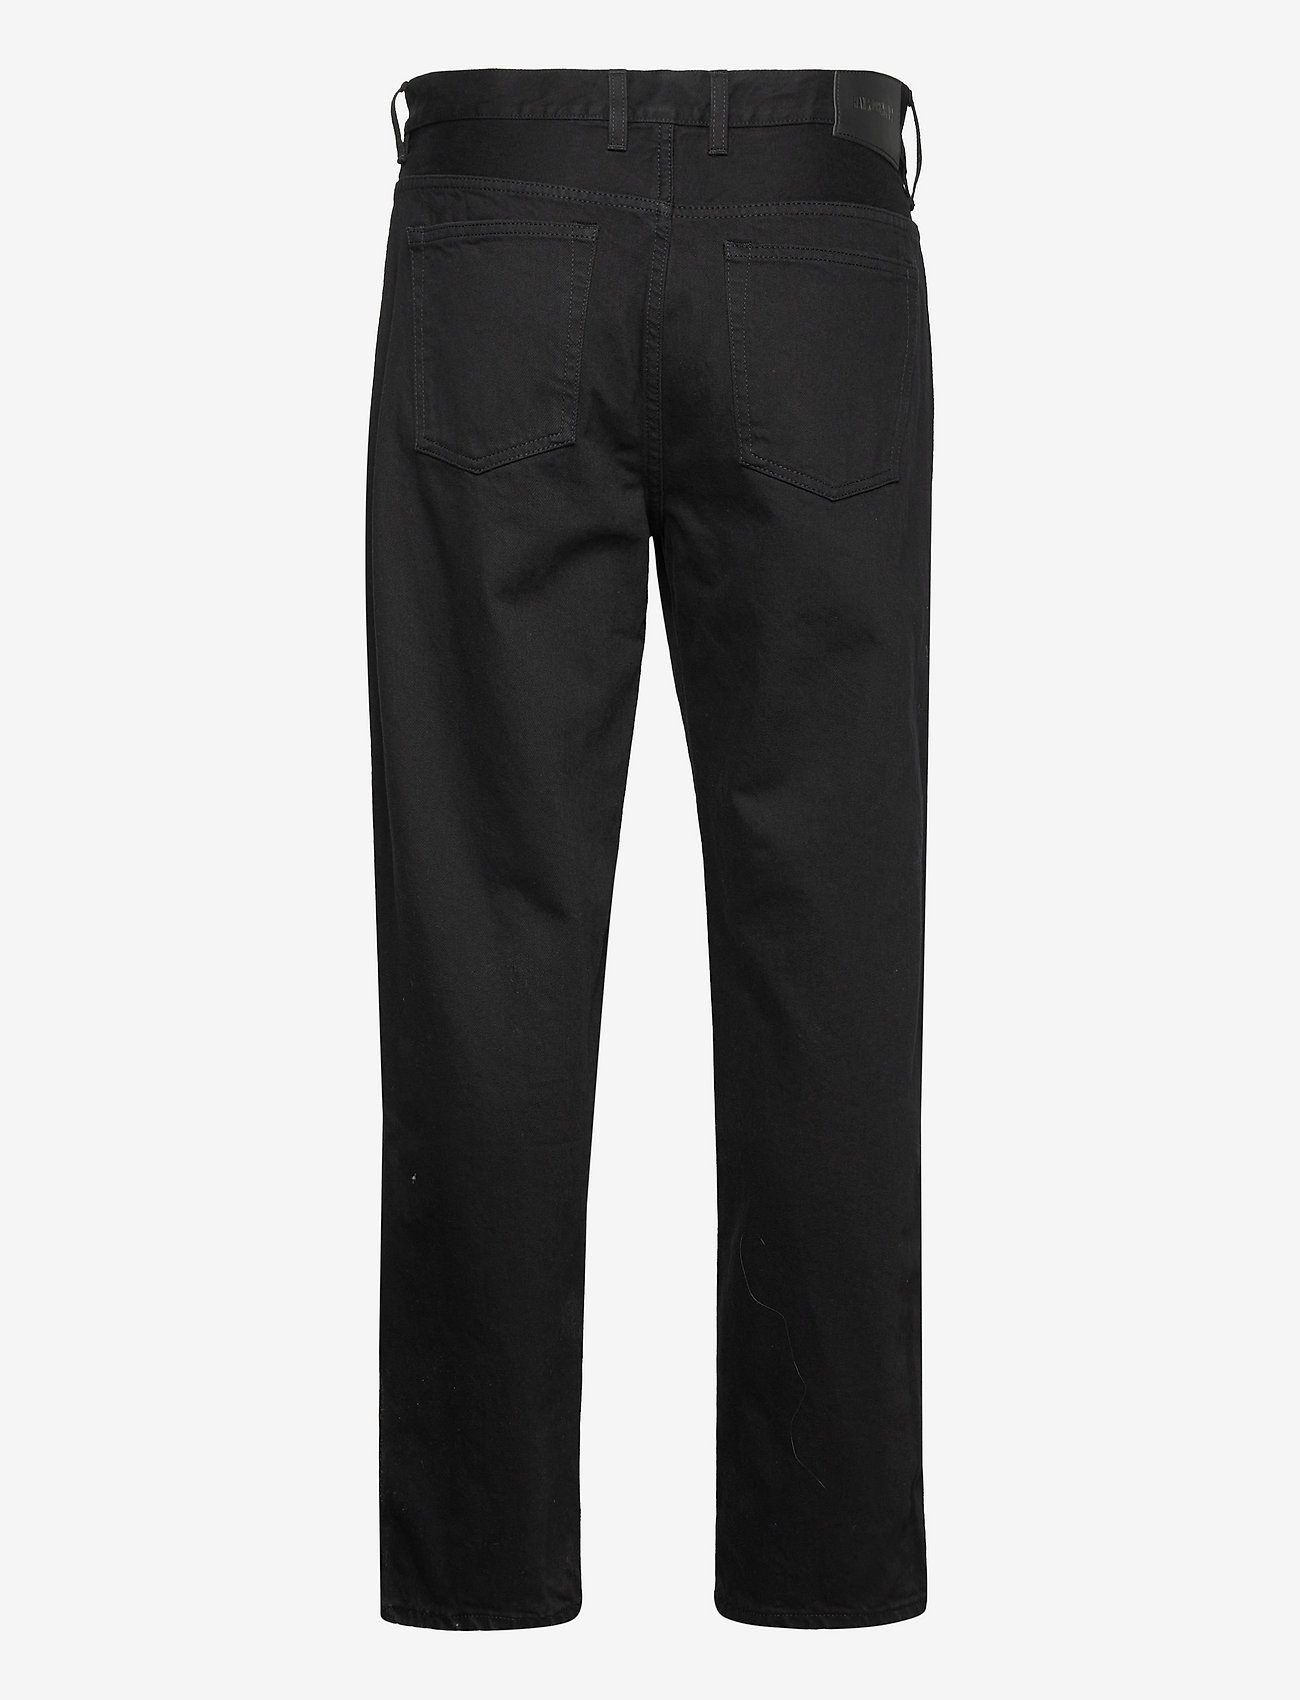 HAN Kjøbenhavn - Relaxed Jeans - black black - 1